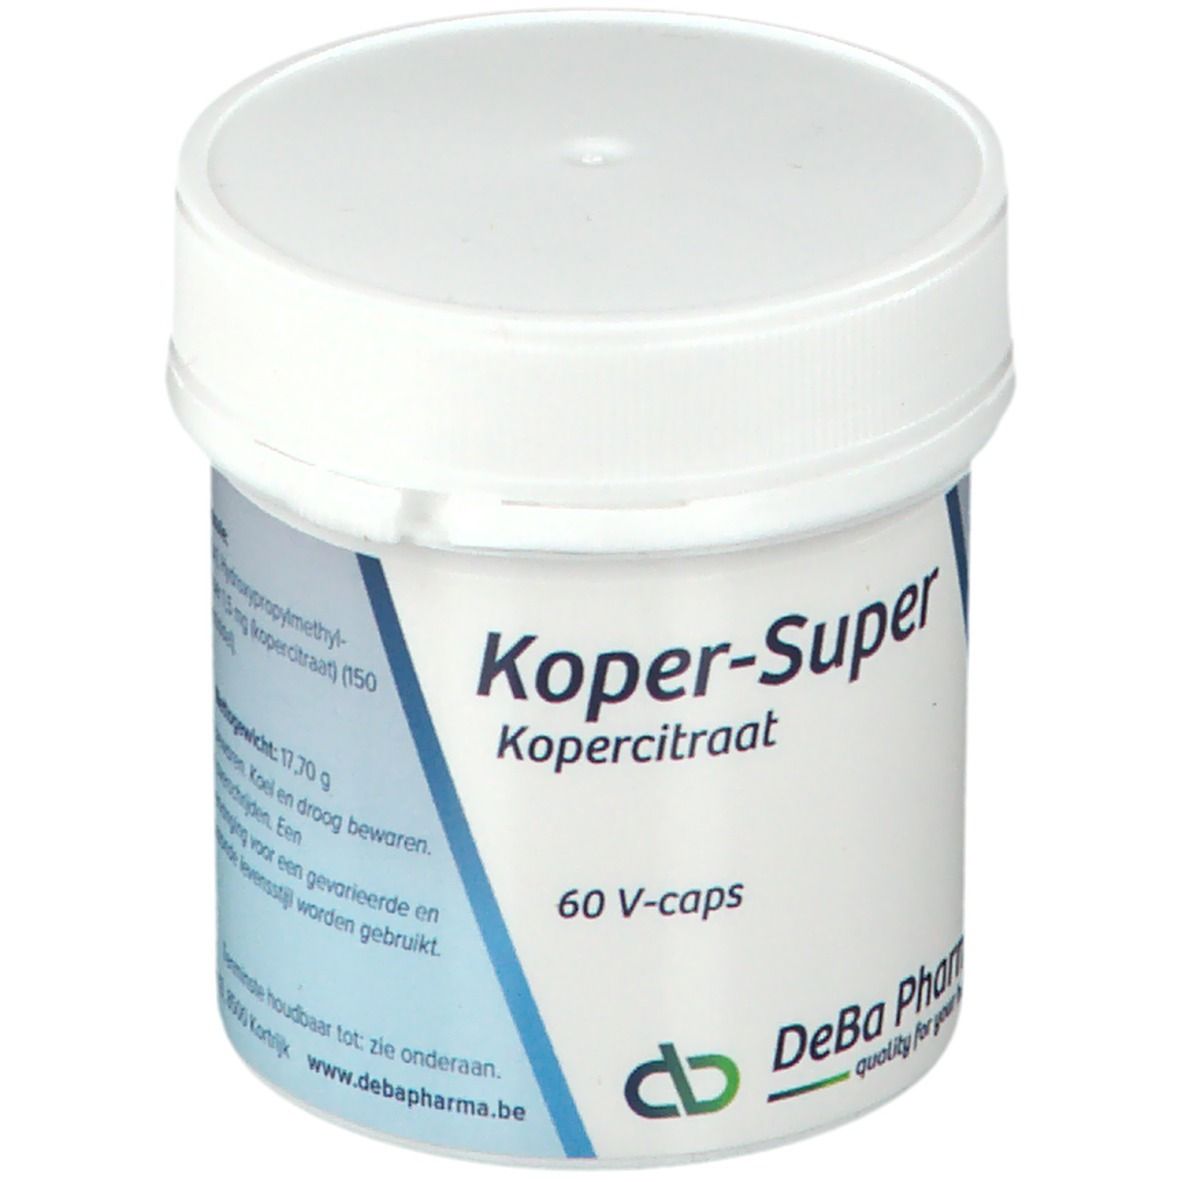 DeBa Pharma Koper - Super